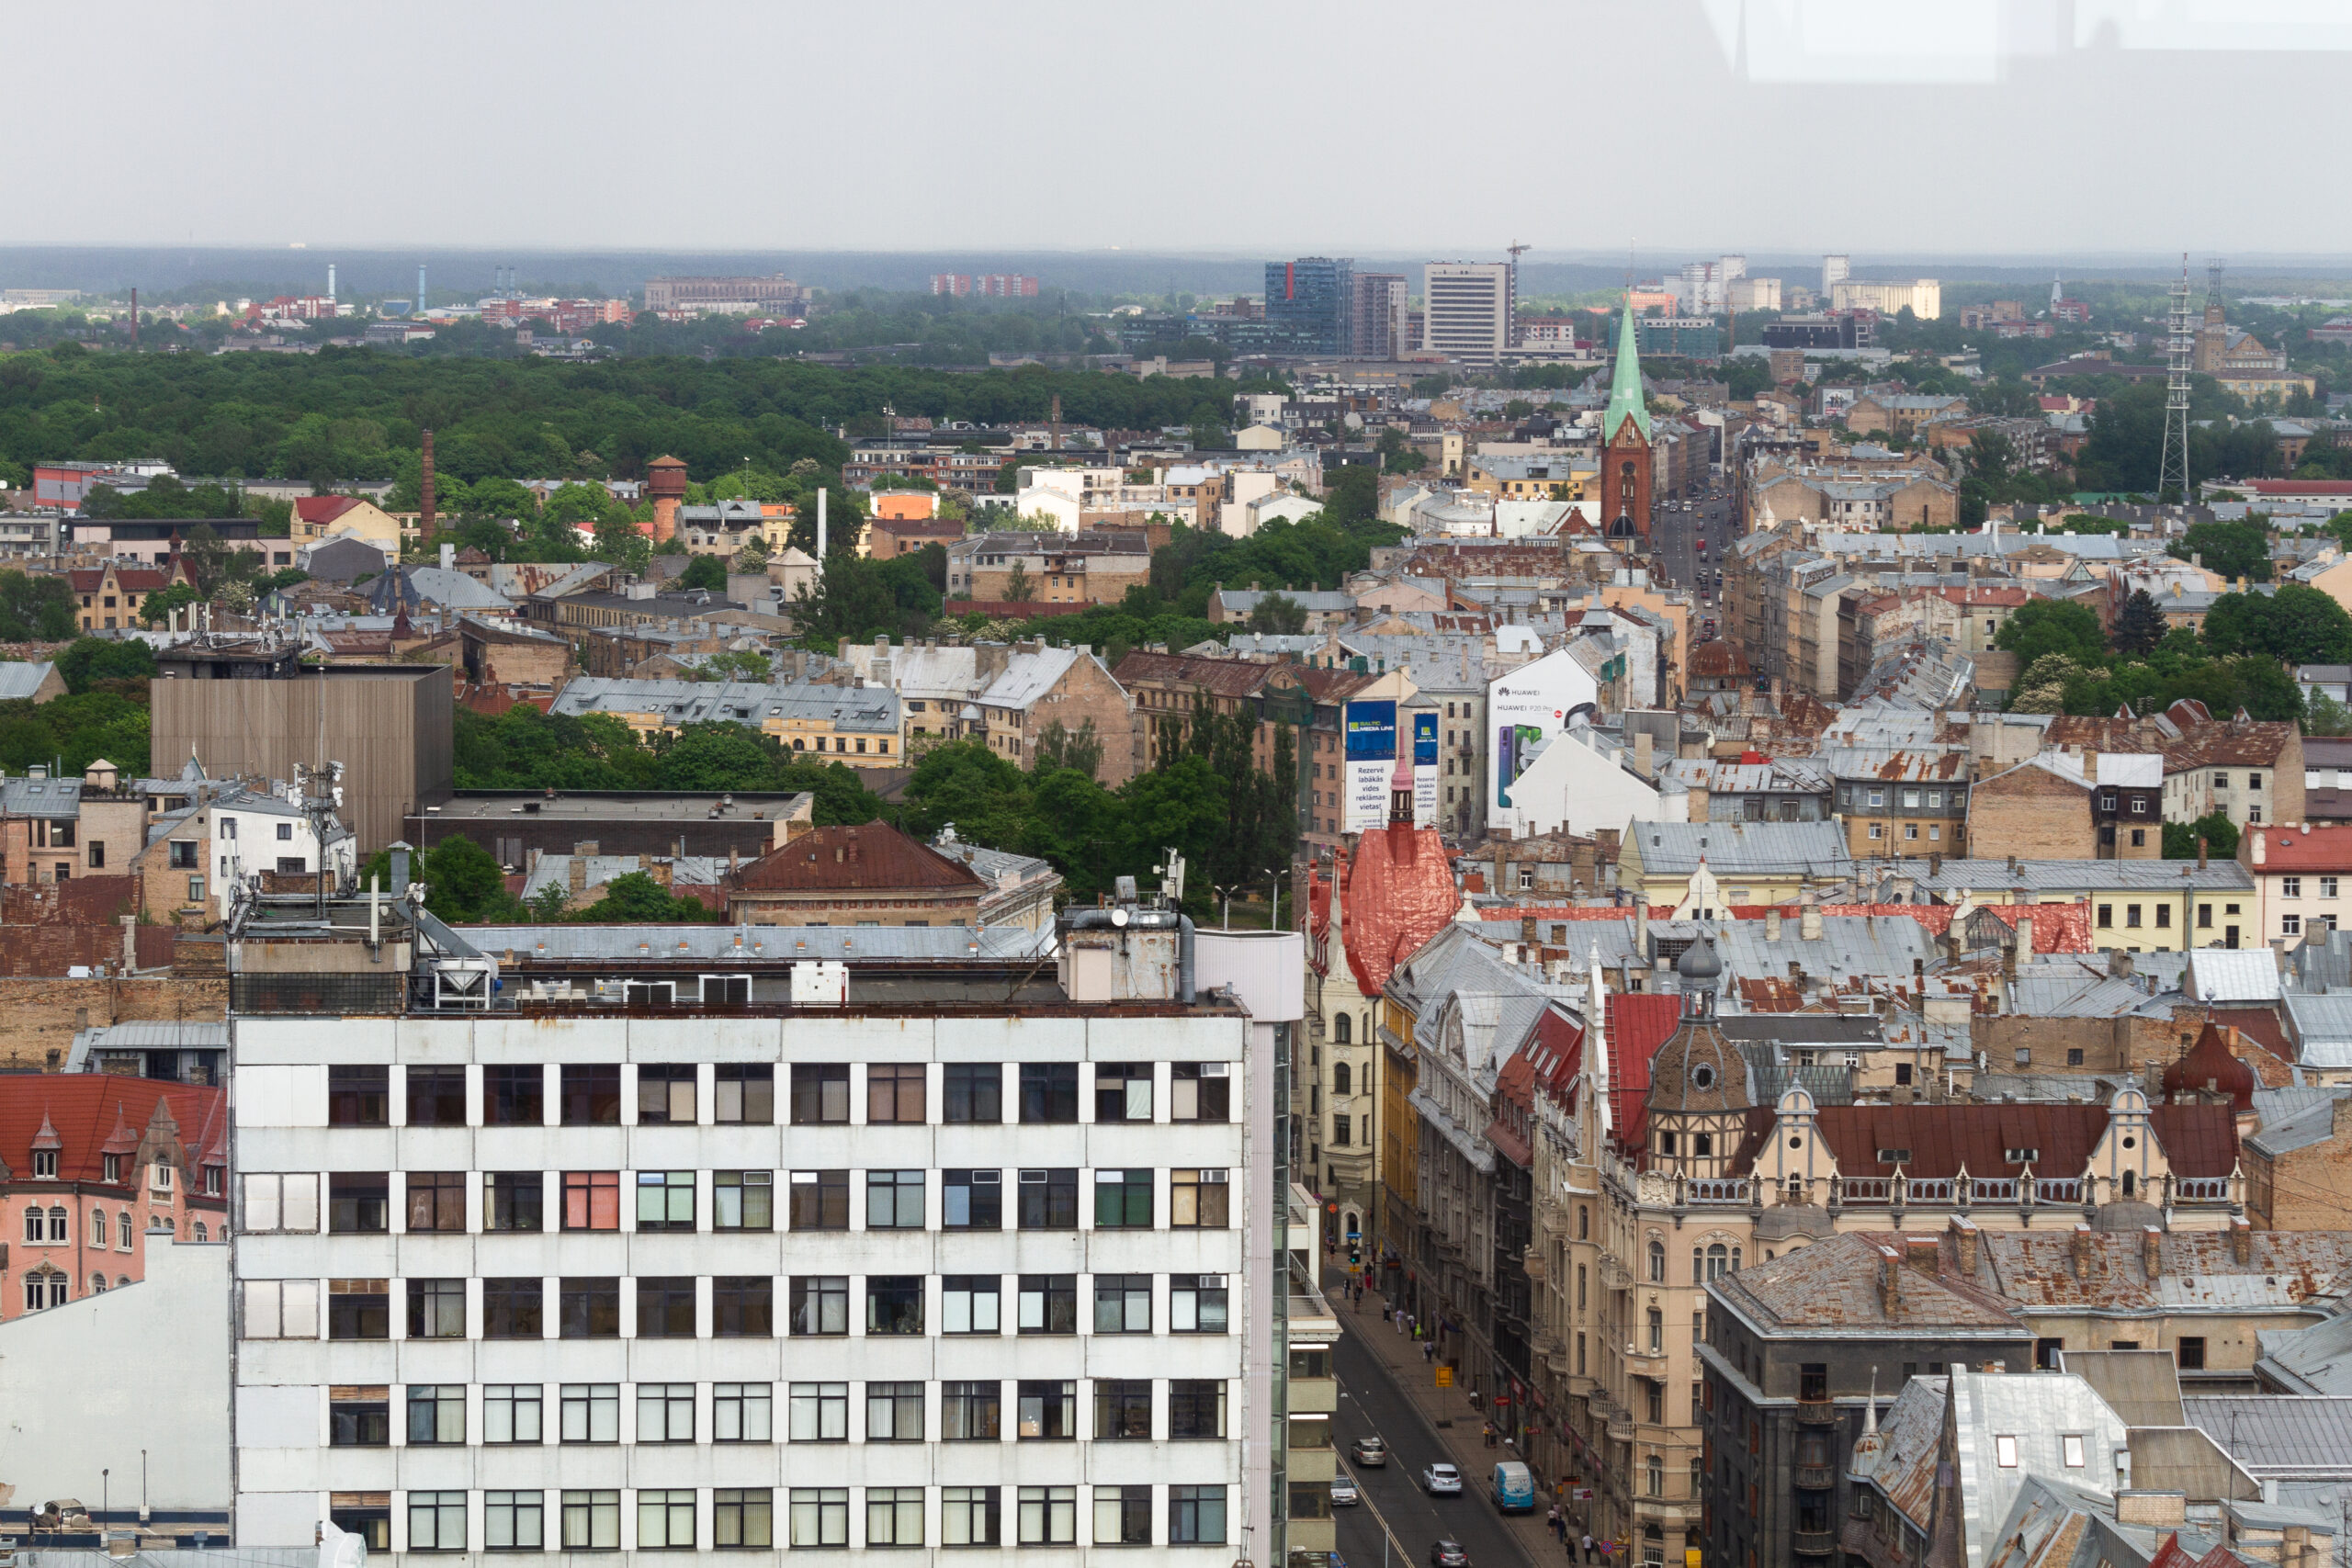 Obrazek ukazuje oszałamiającą panoramę miasta Łodzi, z widokiem na malownicze zabytki i nowoczesną zabudowę. Wśród majestatycznych wieżowców i historycznych budynków, można dostrzec pulsującą energię i bogactwo kulturalne tego dynamicznego miejsca.